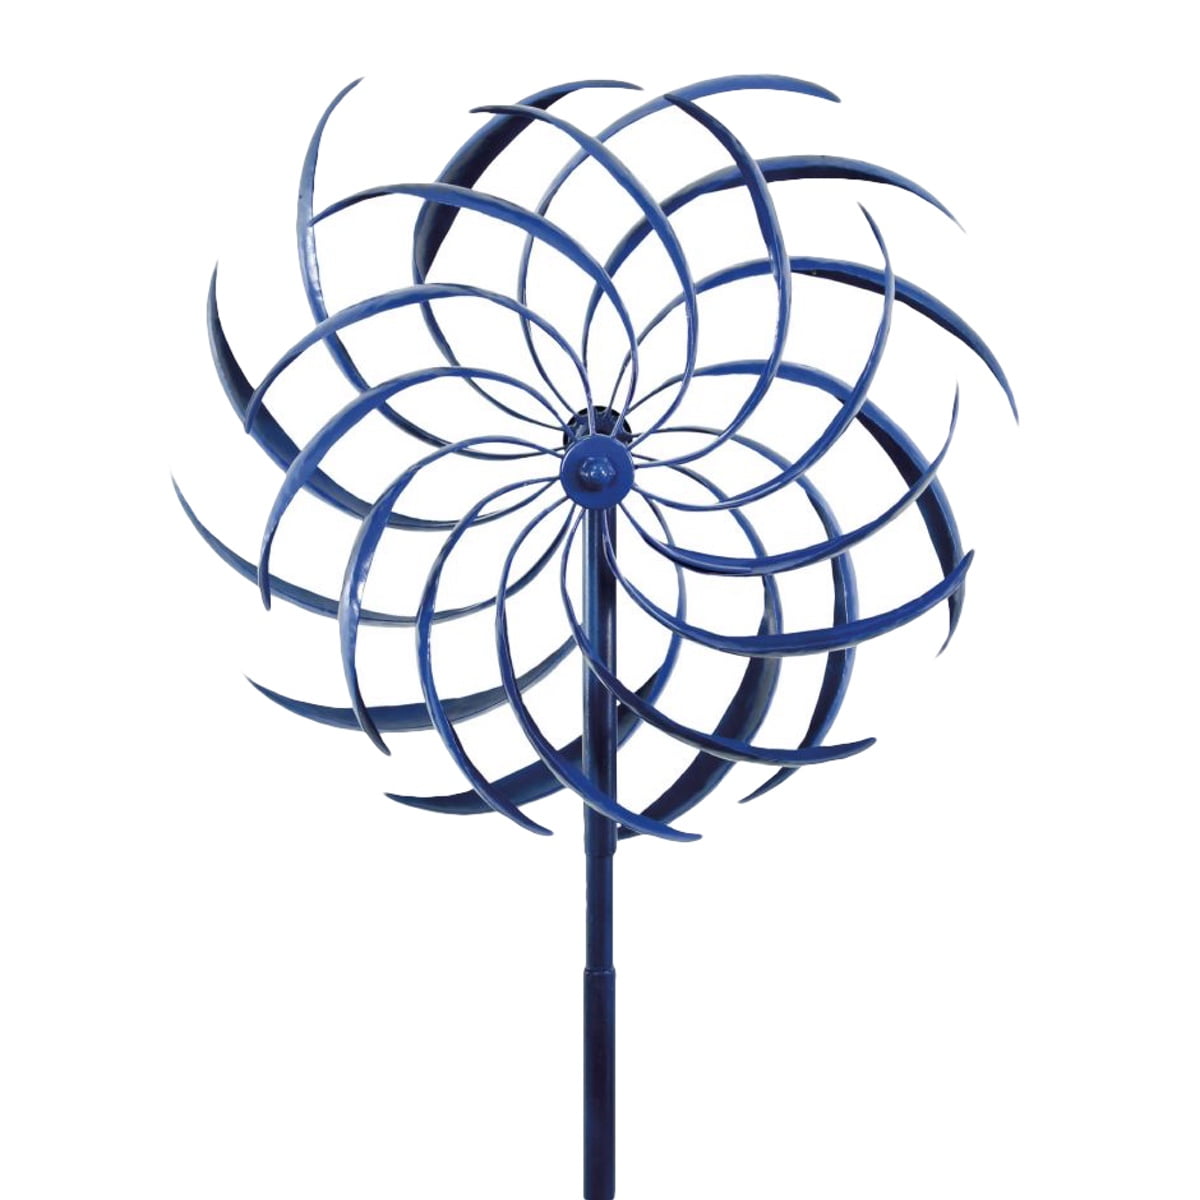 Garden Yard Classical Pin-Wheel Garden Art Sculpture Decor Wind Windmill Spinner 